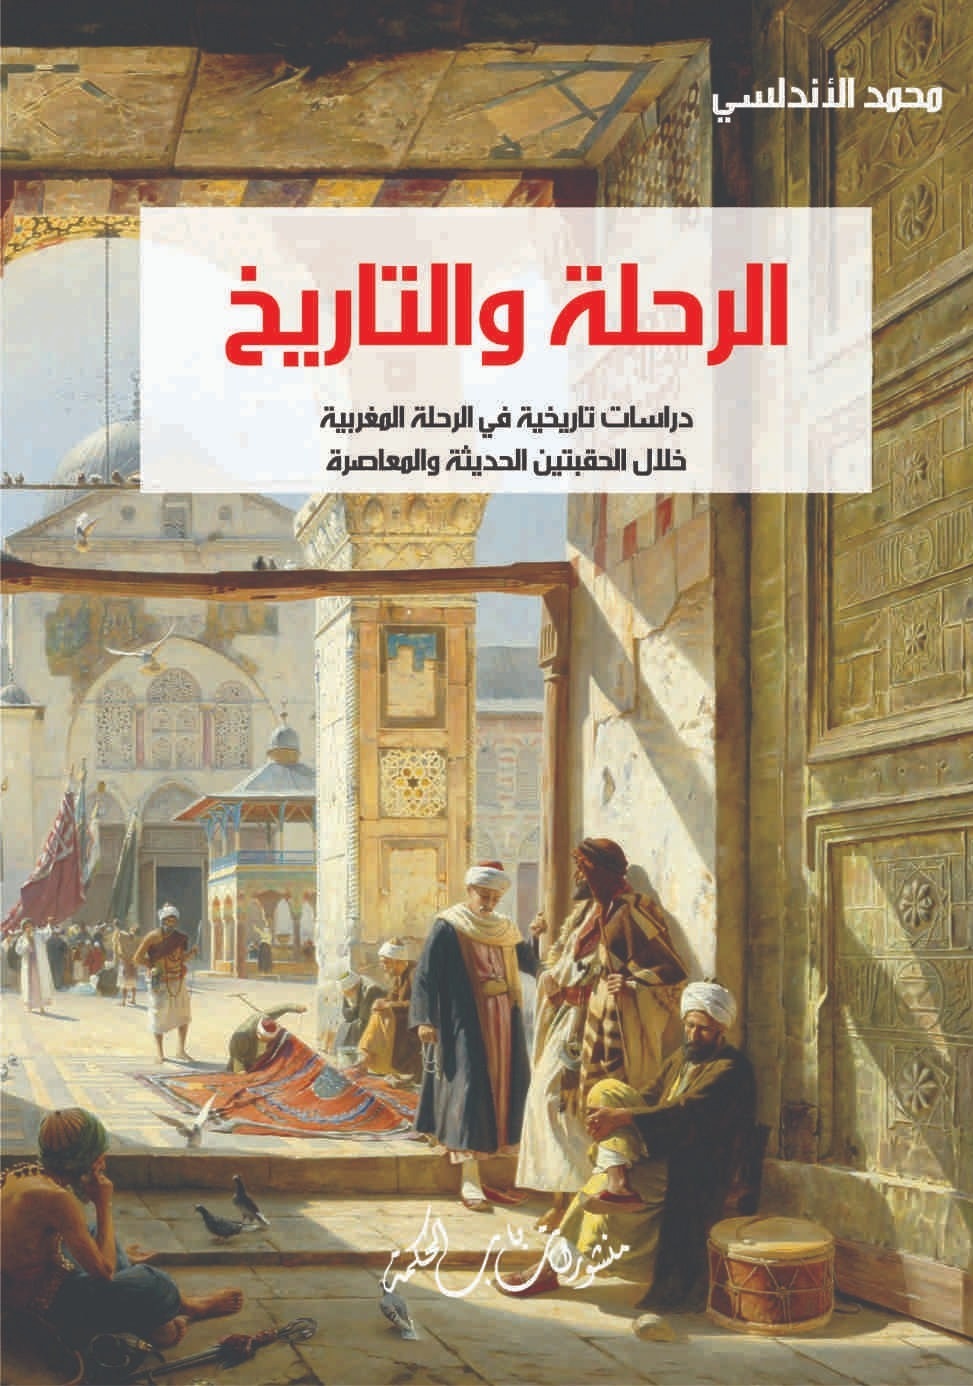 الرحلة والتاريخ ؛ دراسات تاريخية في الرحلة المغربية خلال الحقبتين الحديثة والمعاصرة